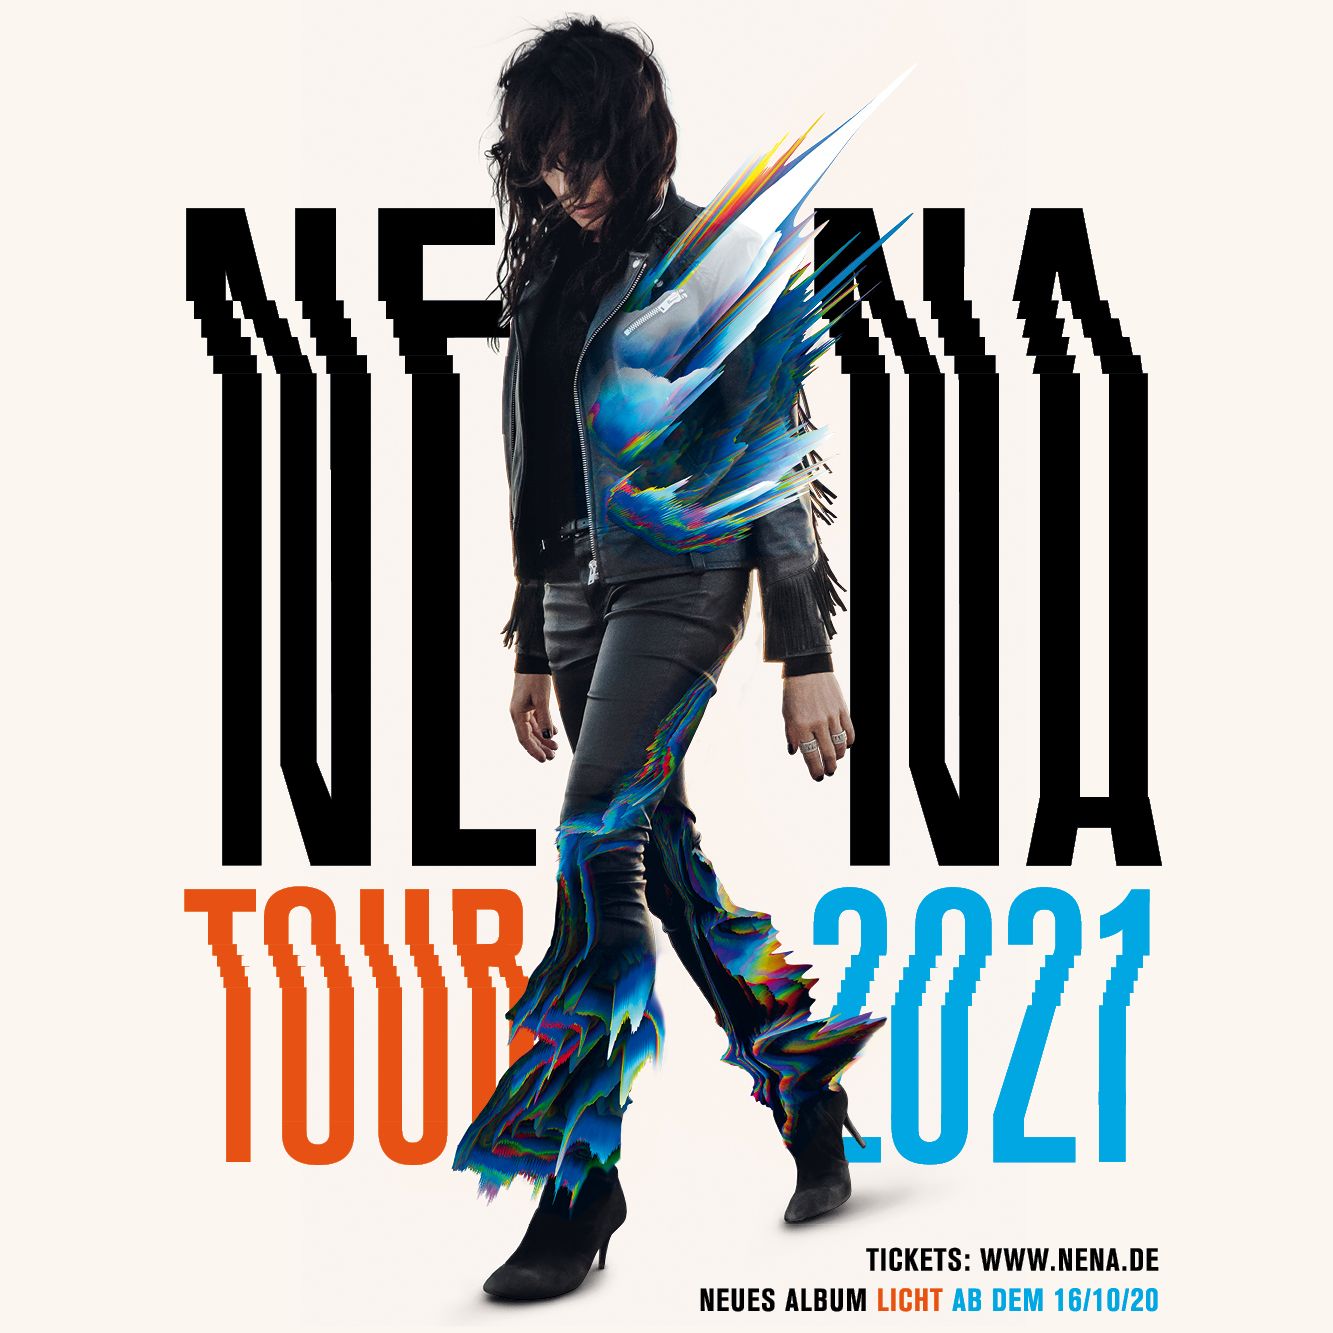 NENA Tour 2021: Neuer Termin am 13.03.2022 (verlegt vom 05.03.2021)